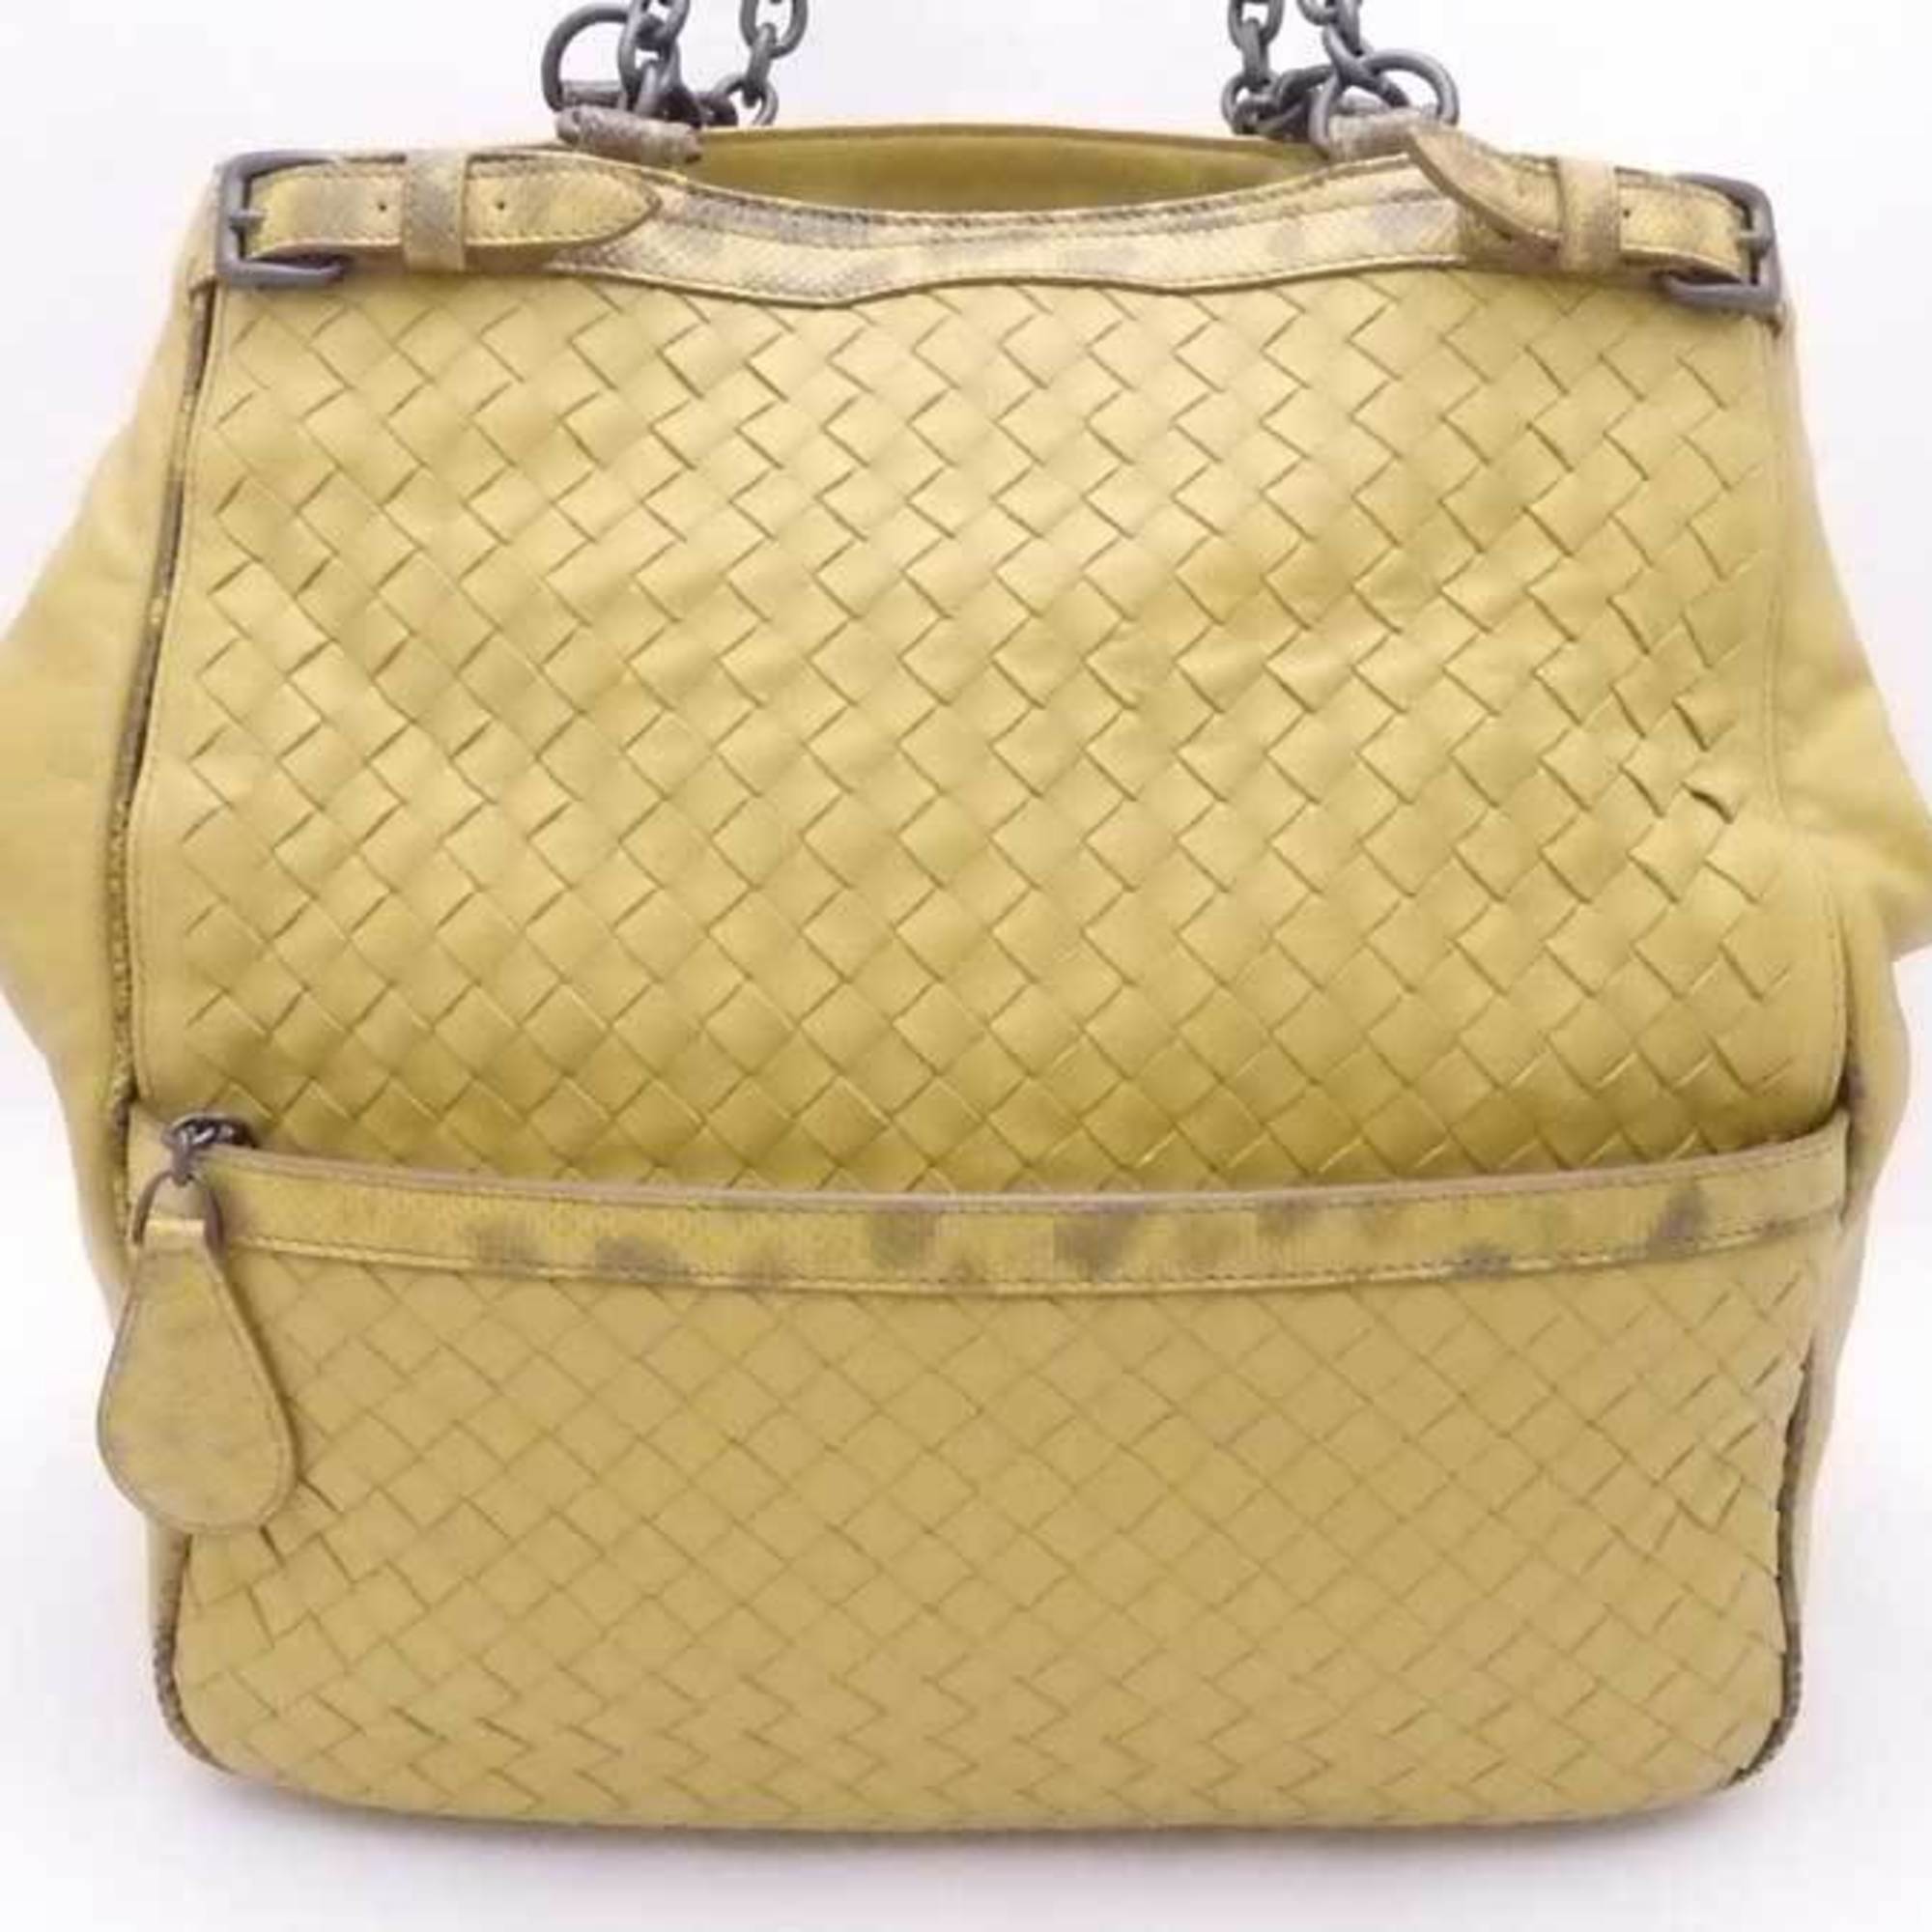 Bottega Veneta BOTTEGAVENETA shoulder bag intrecciato leather green yellow unisex